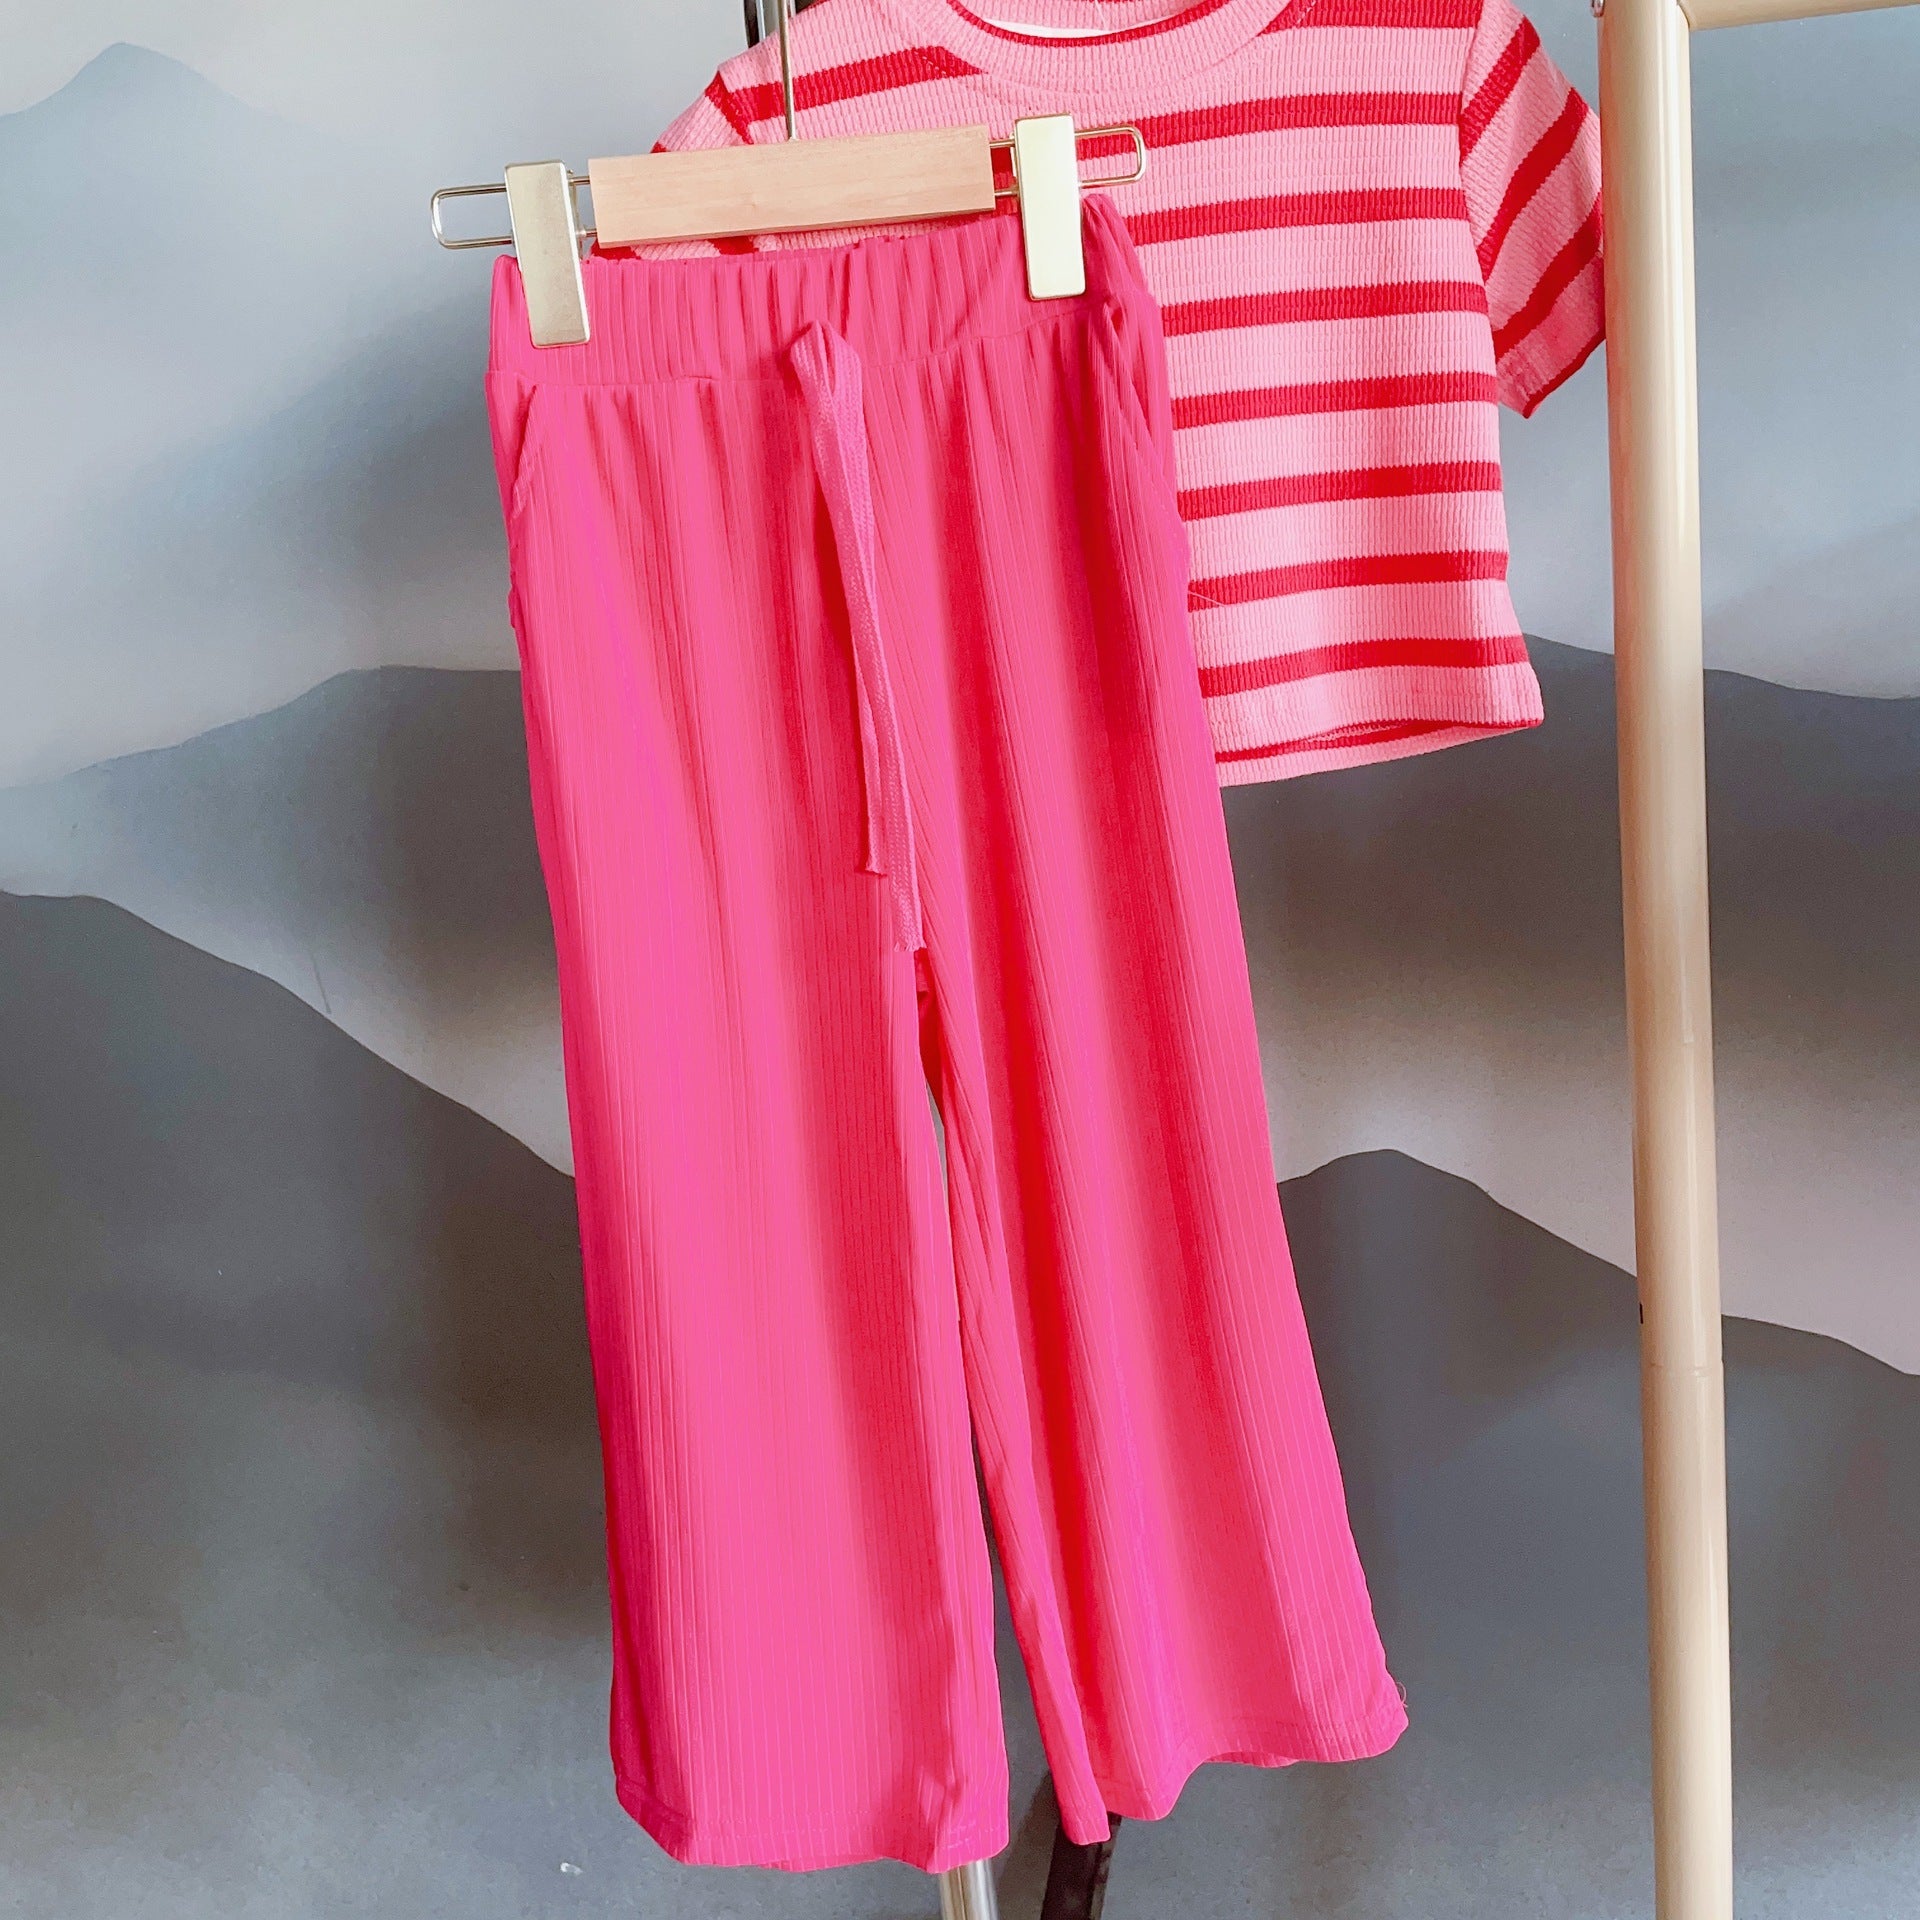 [363517] - Setelan Kaos Belang Celana Panjang Kulot Anak Perempuan - Motif Strip Plain